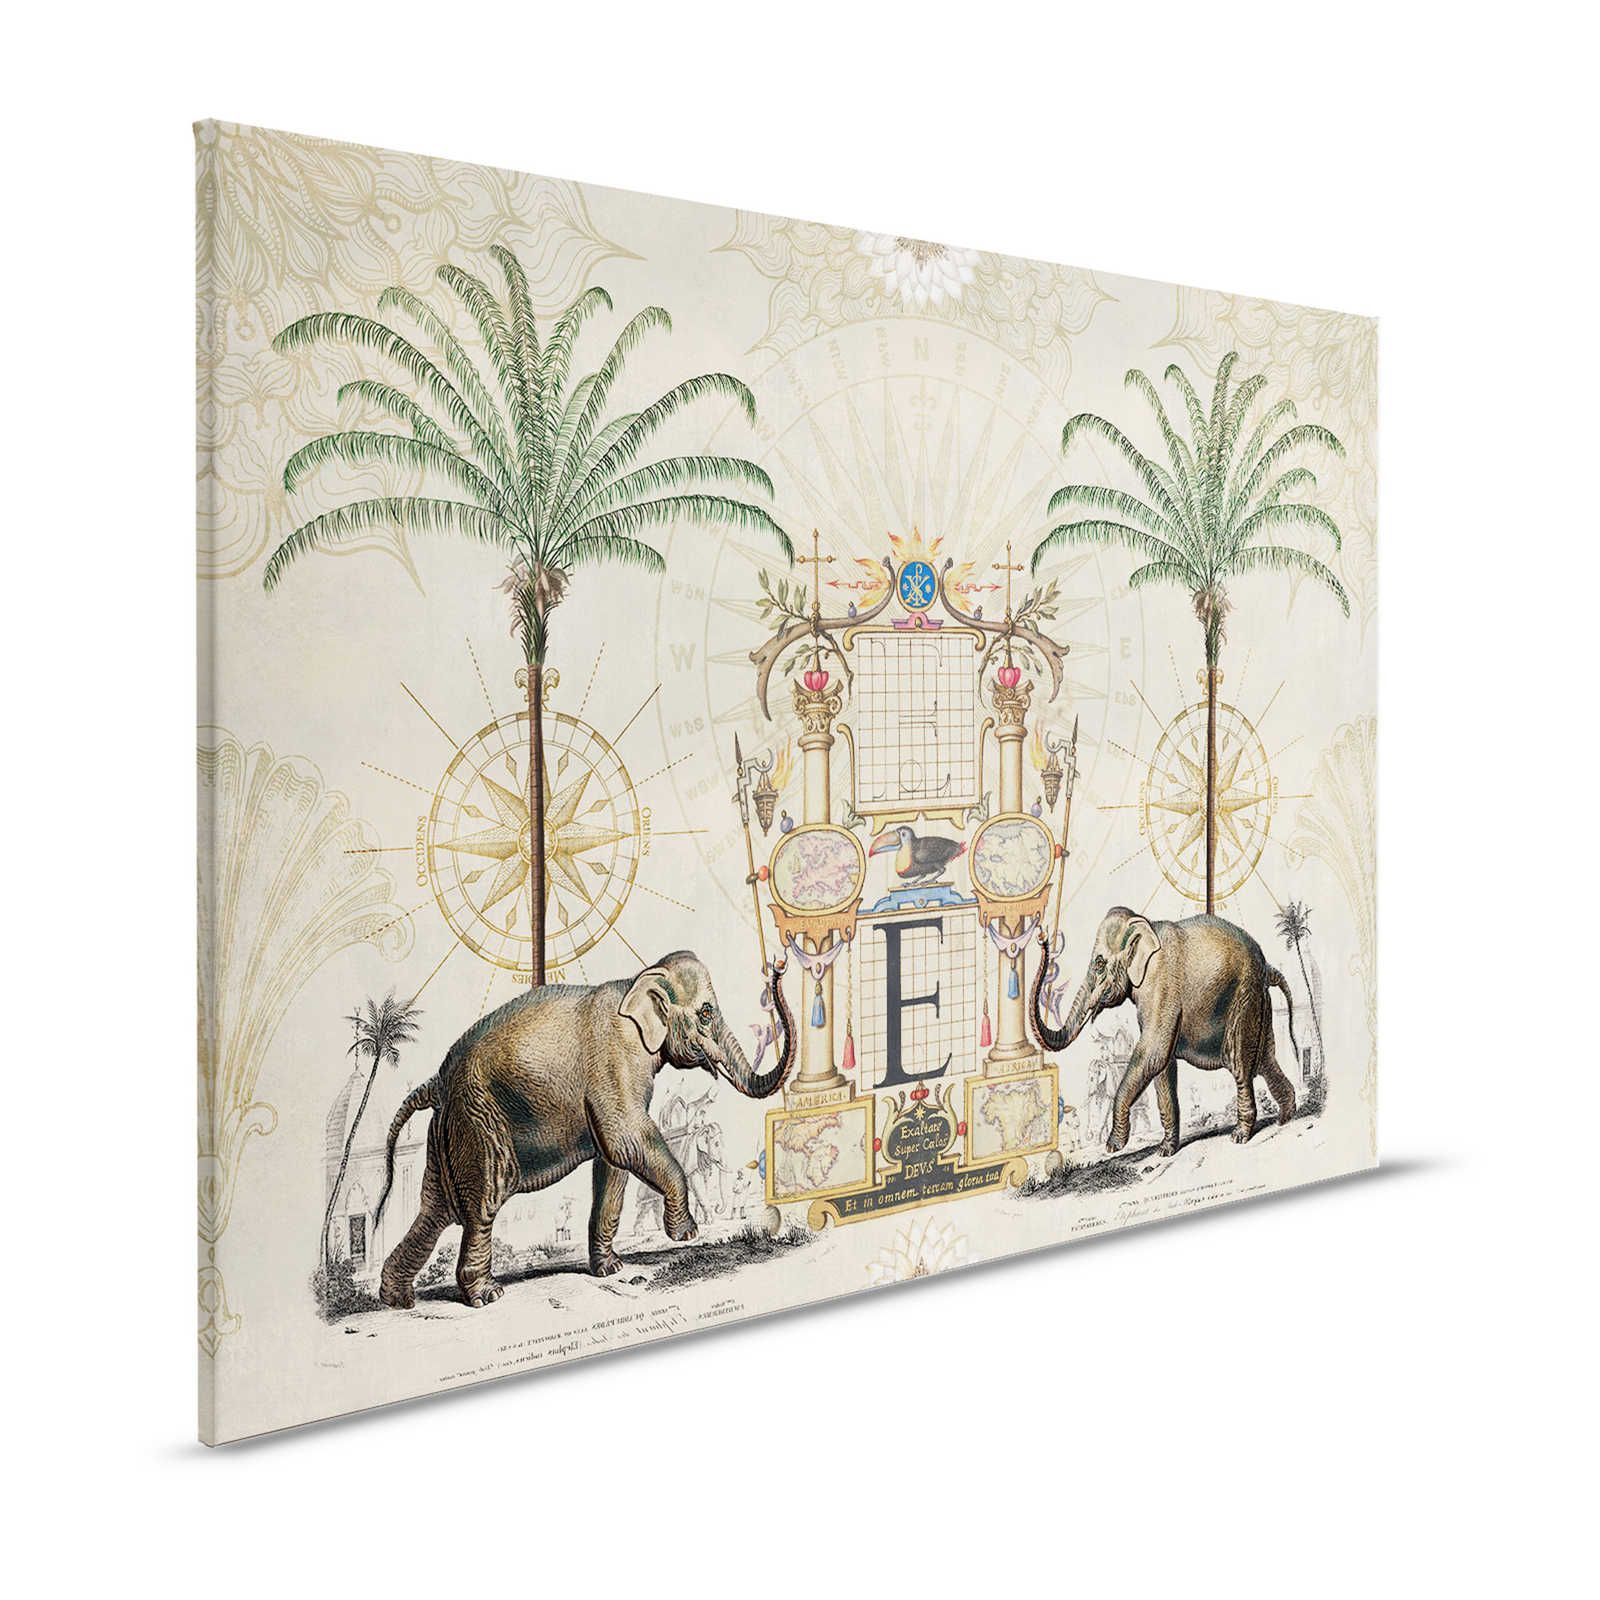 Nostalgie Leinwandbild mit Vintage Elefanten Muster – 1,20 m x 0,80 m
